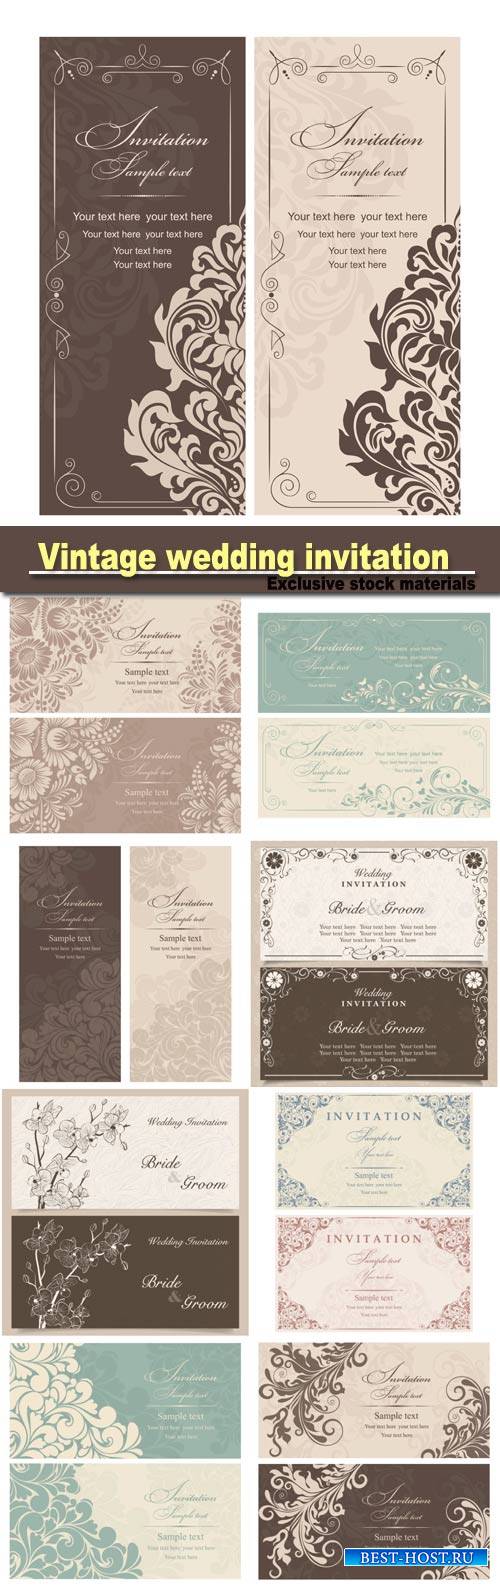 Vintage wedding invitation with floral design, vector illustration